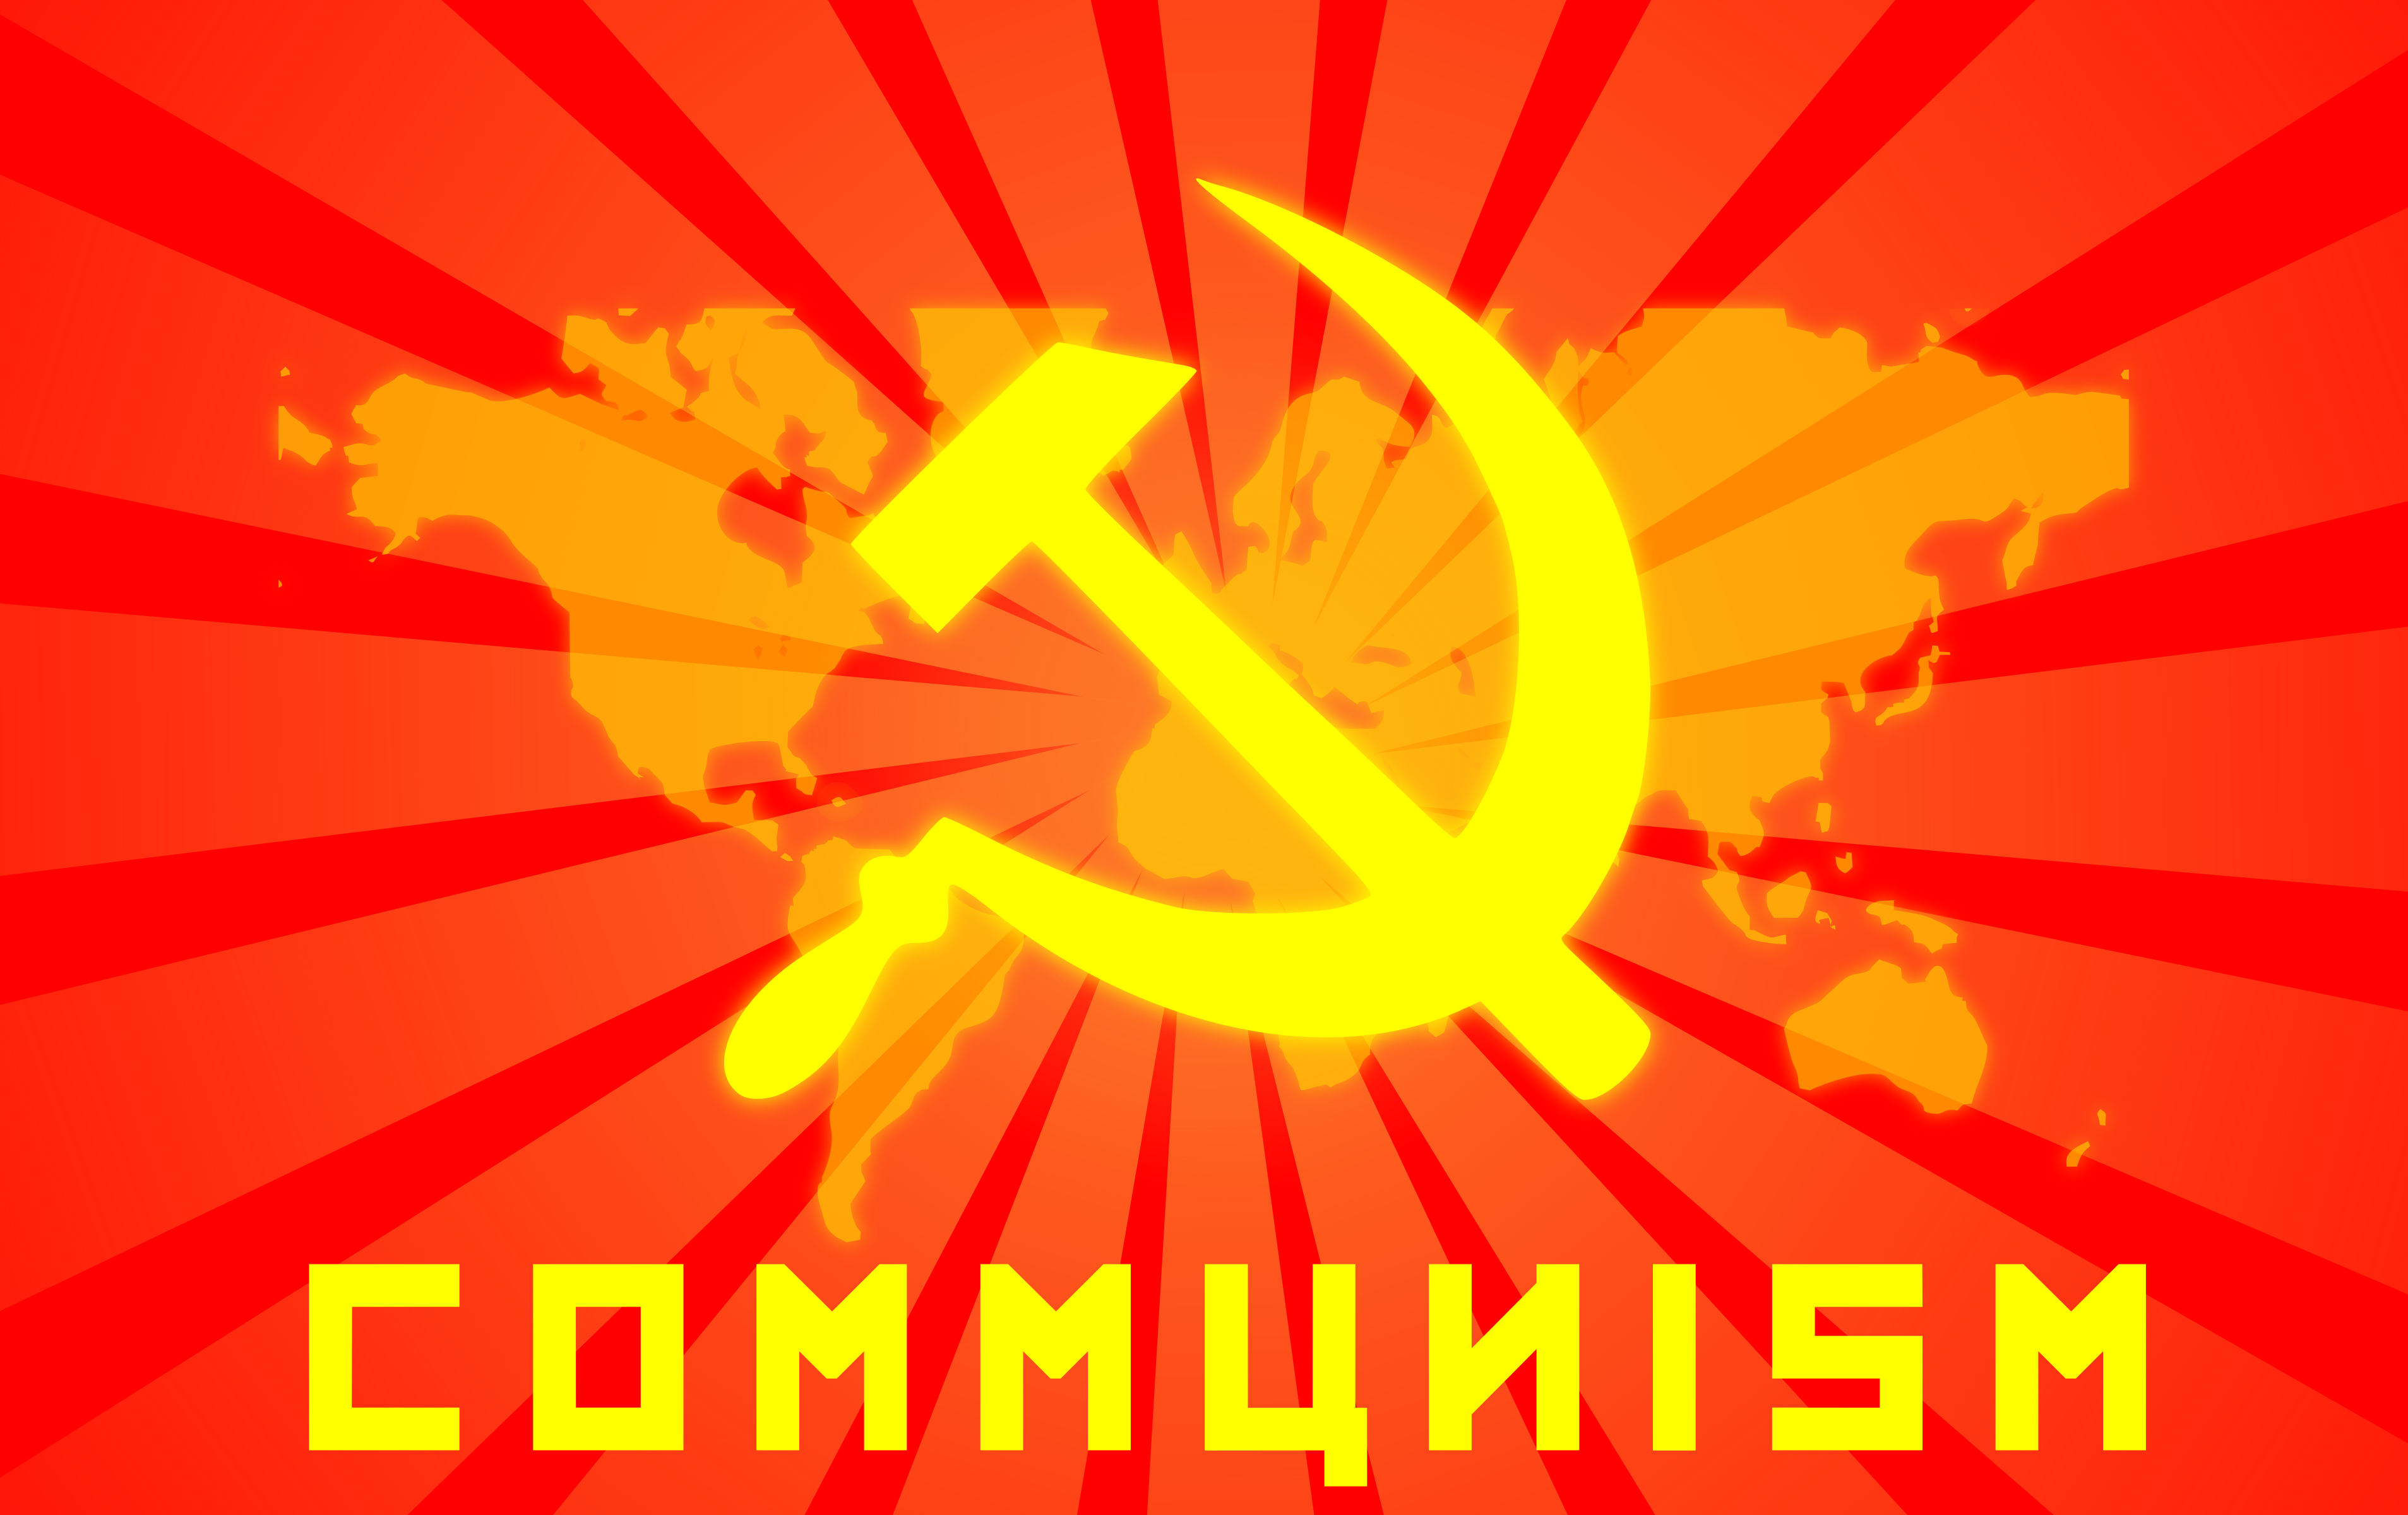 Communism #8